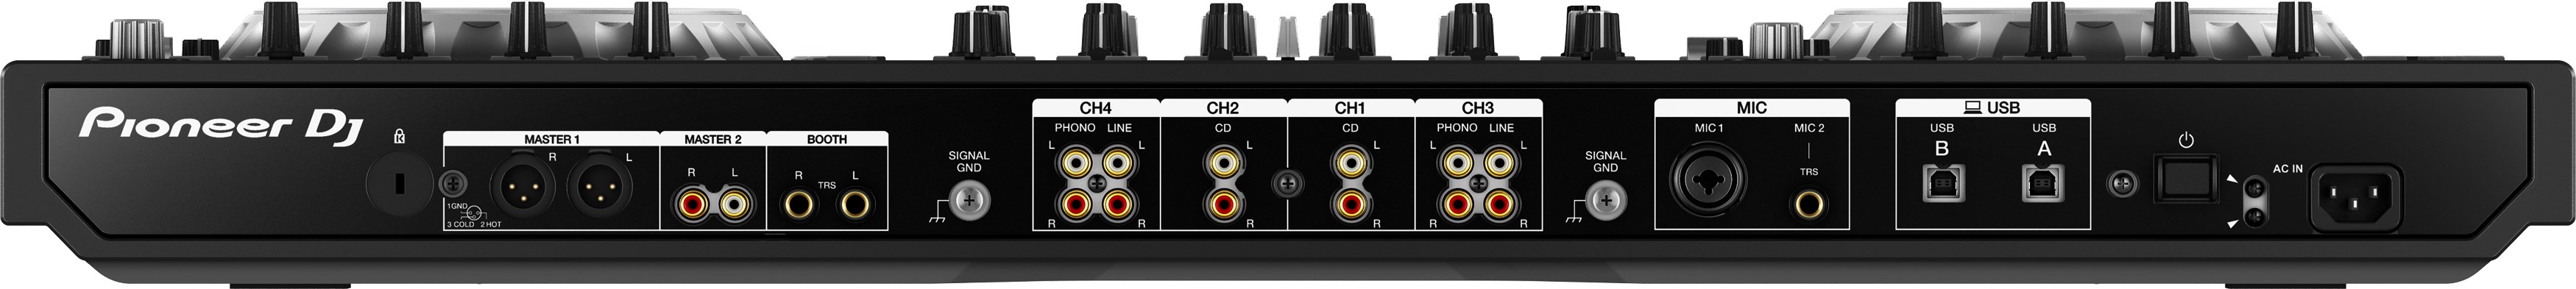 Pioneer Dj Ddj-sz2 - USB DJ controller - Variation 3